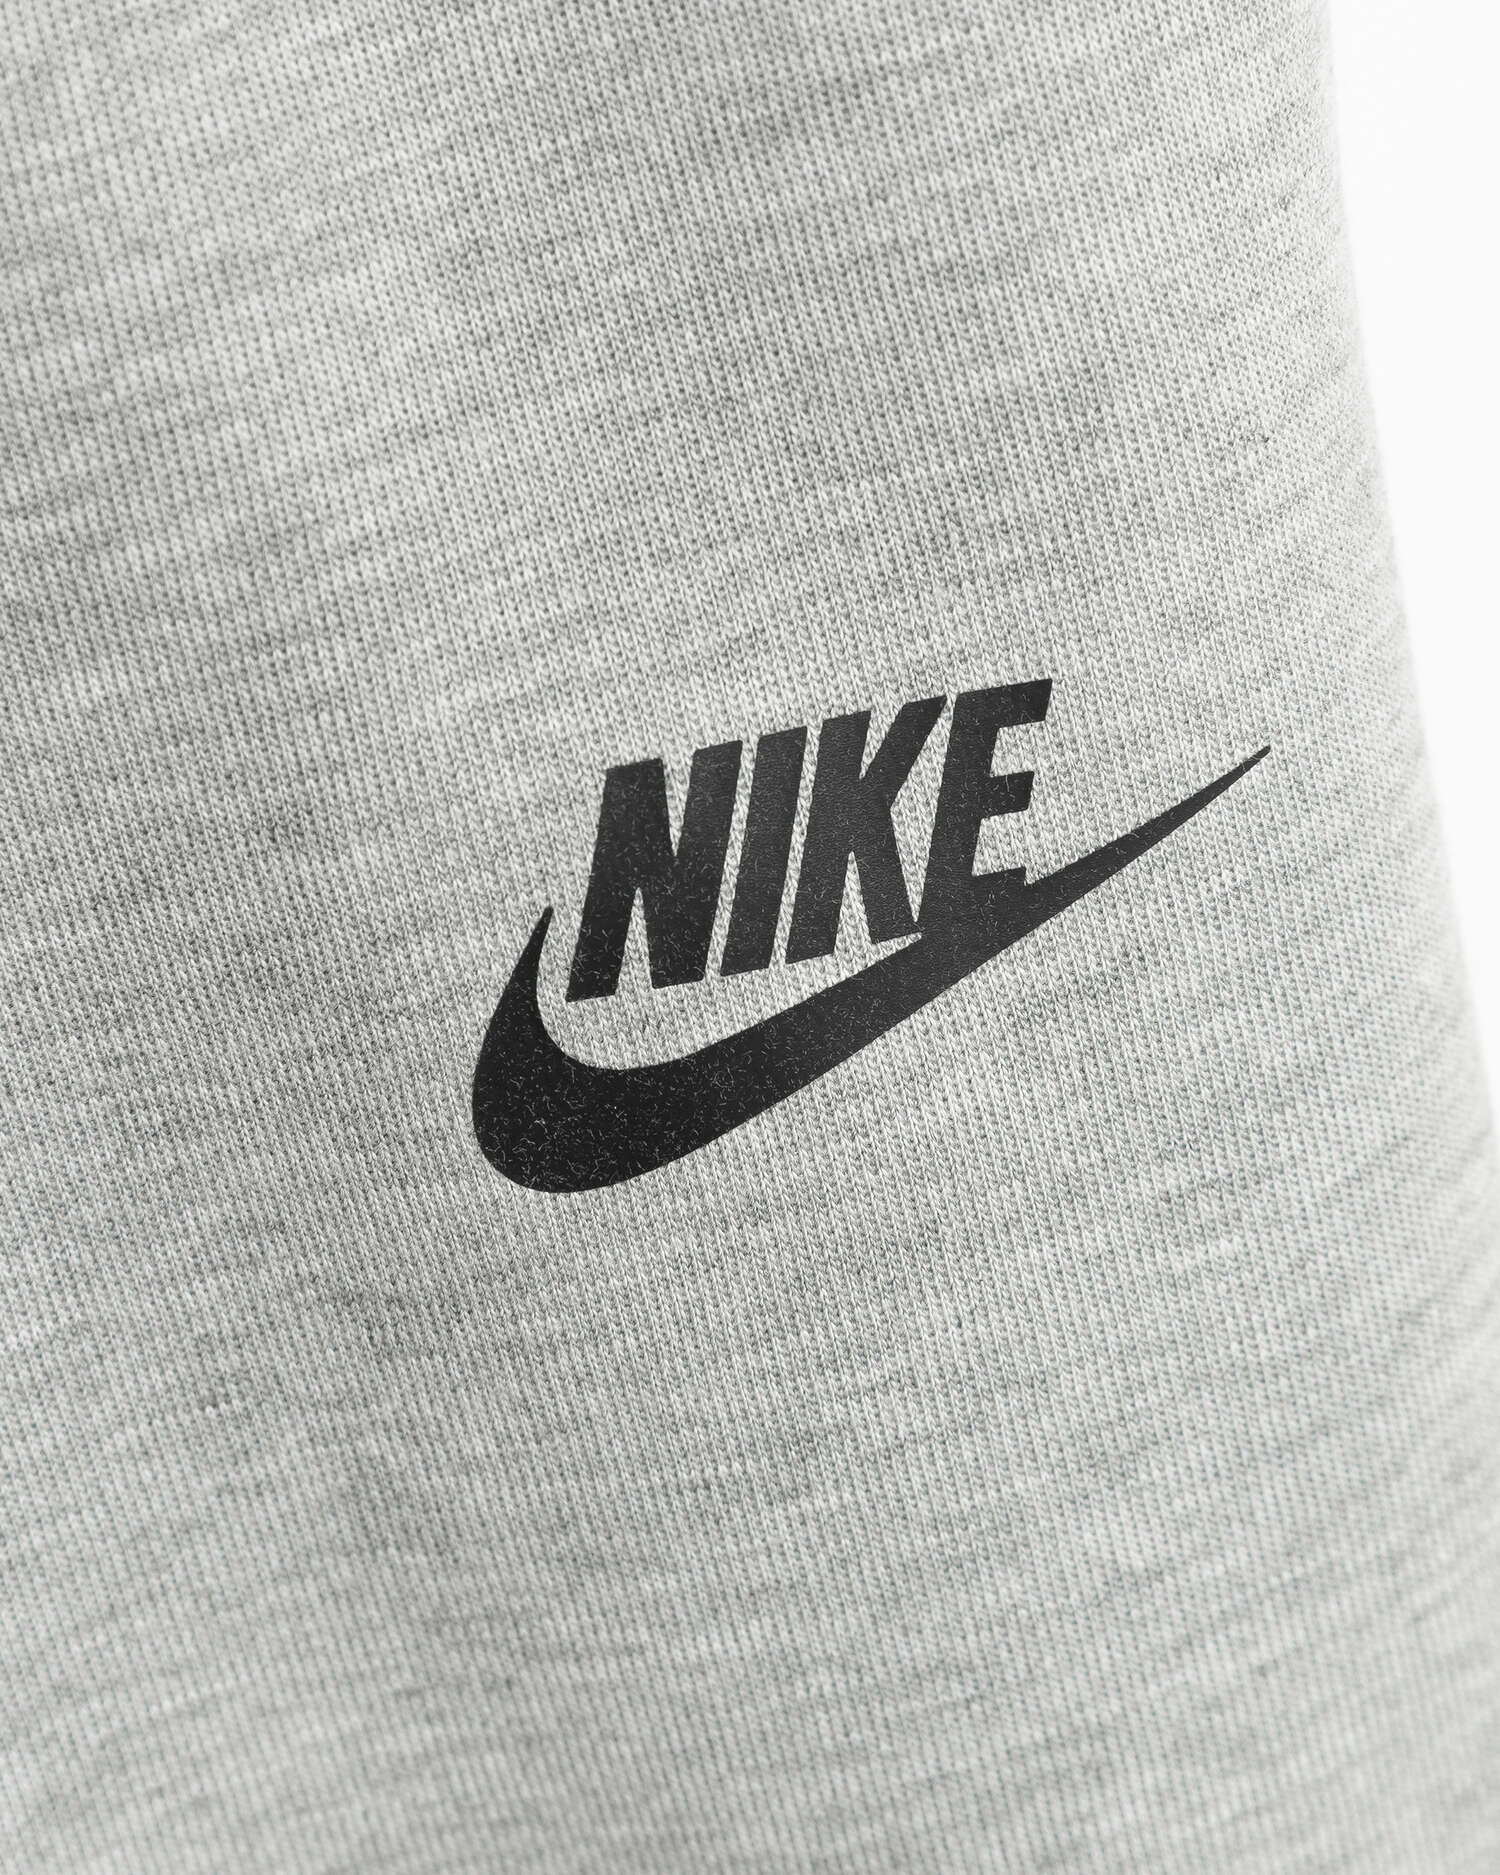 Nike Sportswear Tech Fleece Jogger Men's Pants Gray CU4495-063| Buy ...